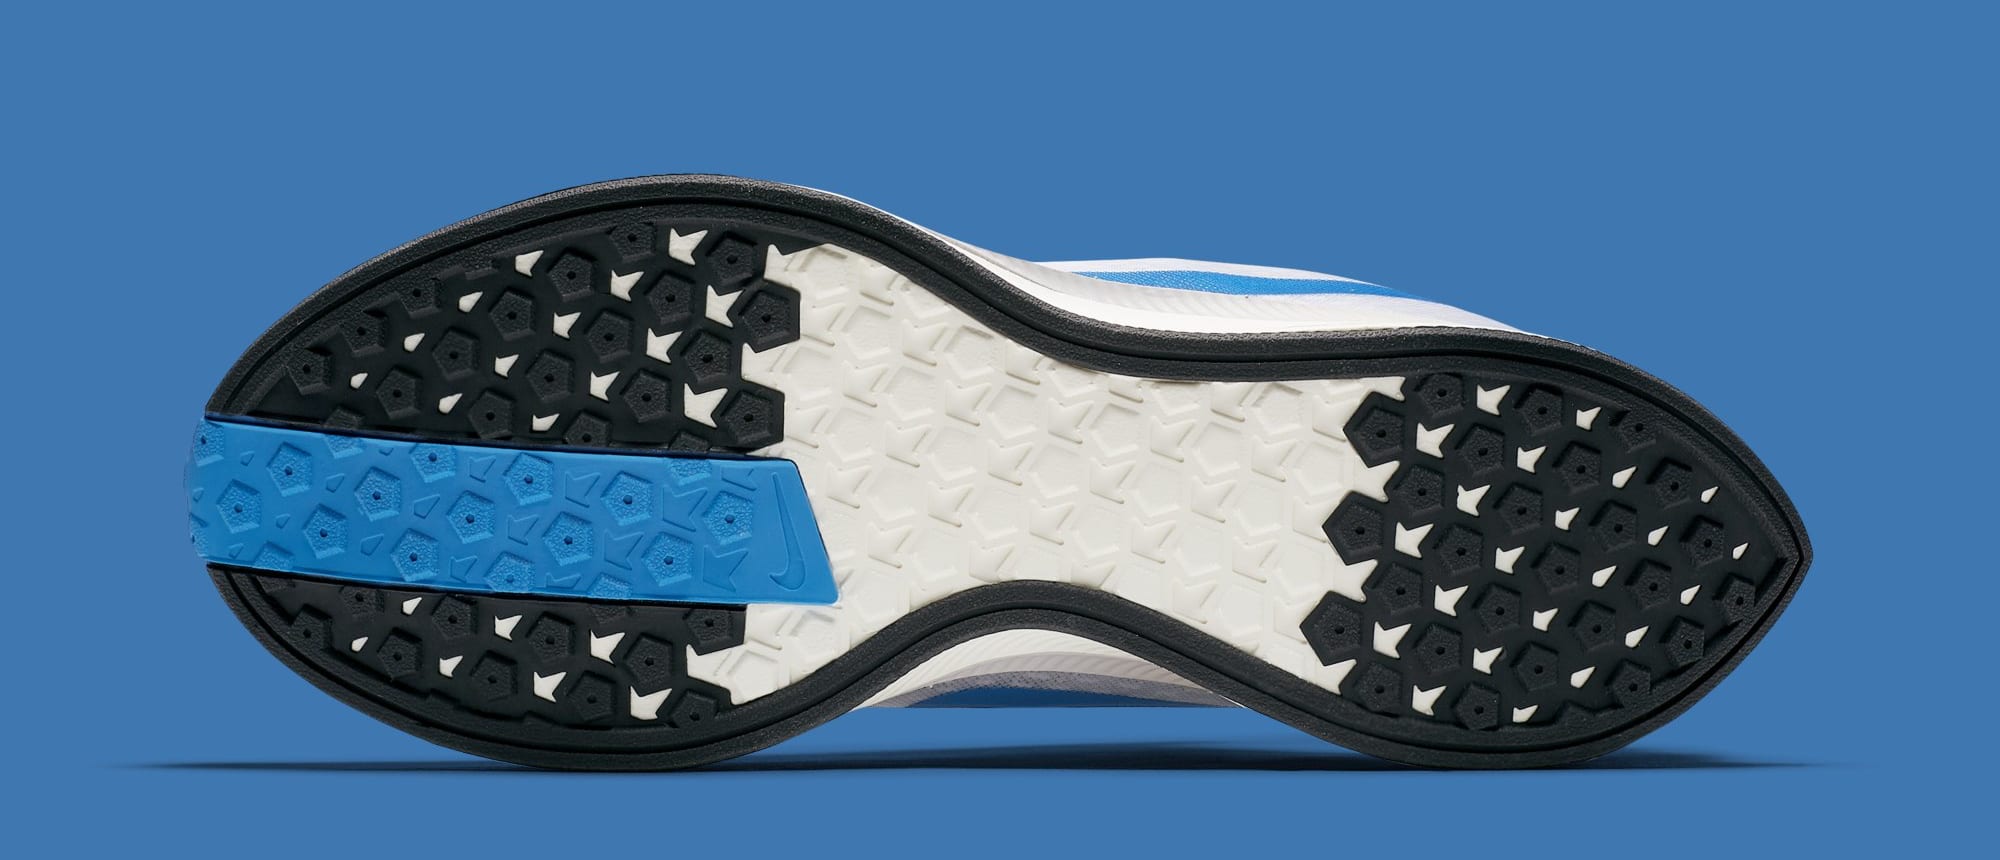 Nike Zoom Pegasus Turbo &#x27;White/Blue Hero/Vast Grey/Blue Void&#x27; AJ4114-140 (Sole)